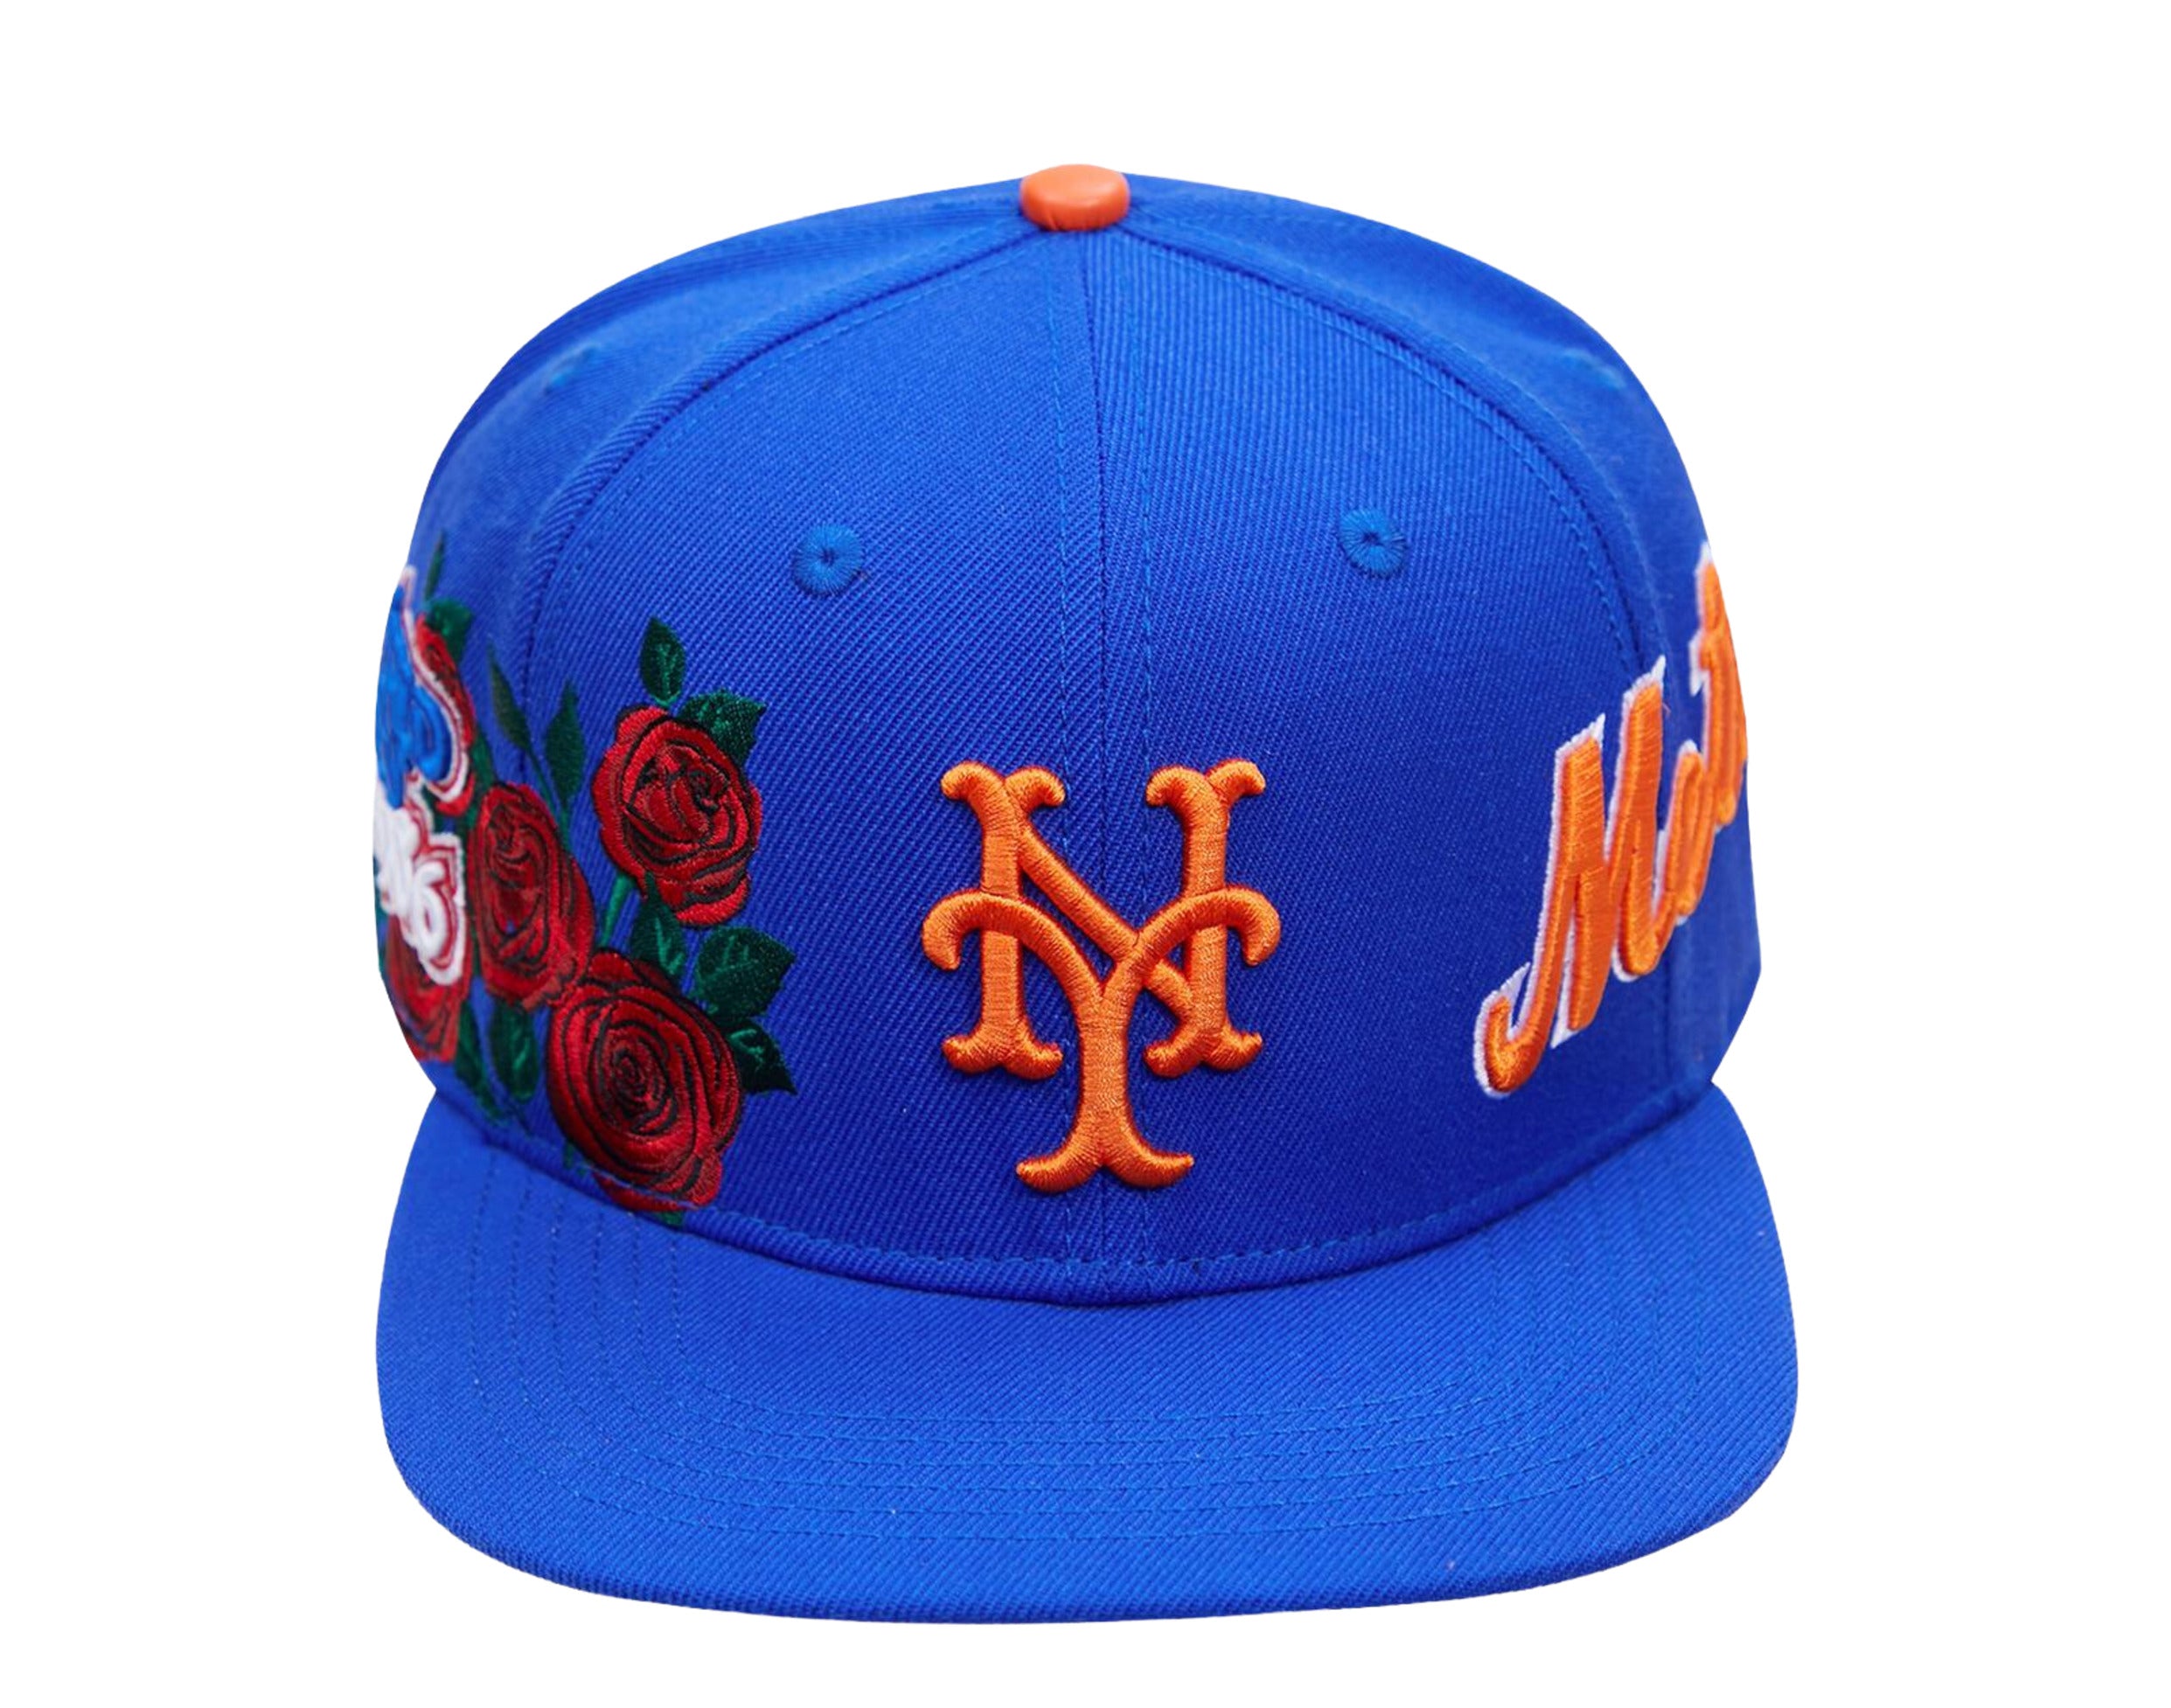 Mets Team Store on X: New snapbacks 🧢🔥